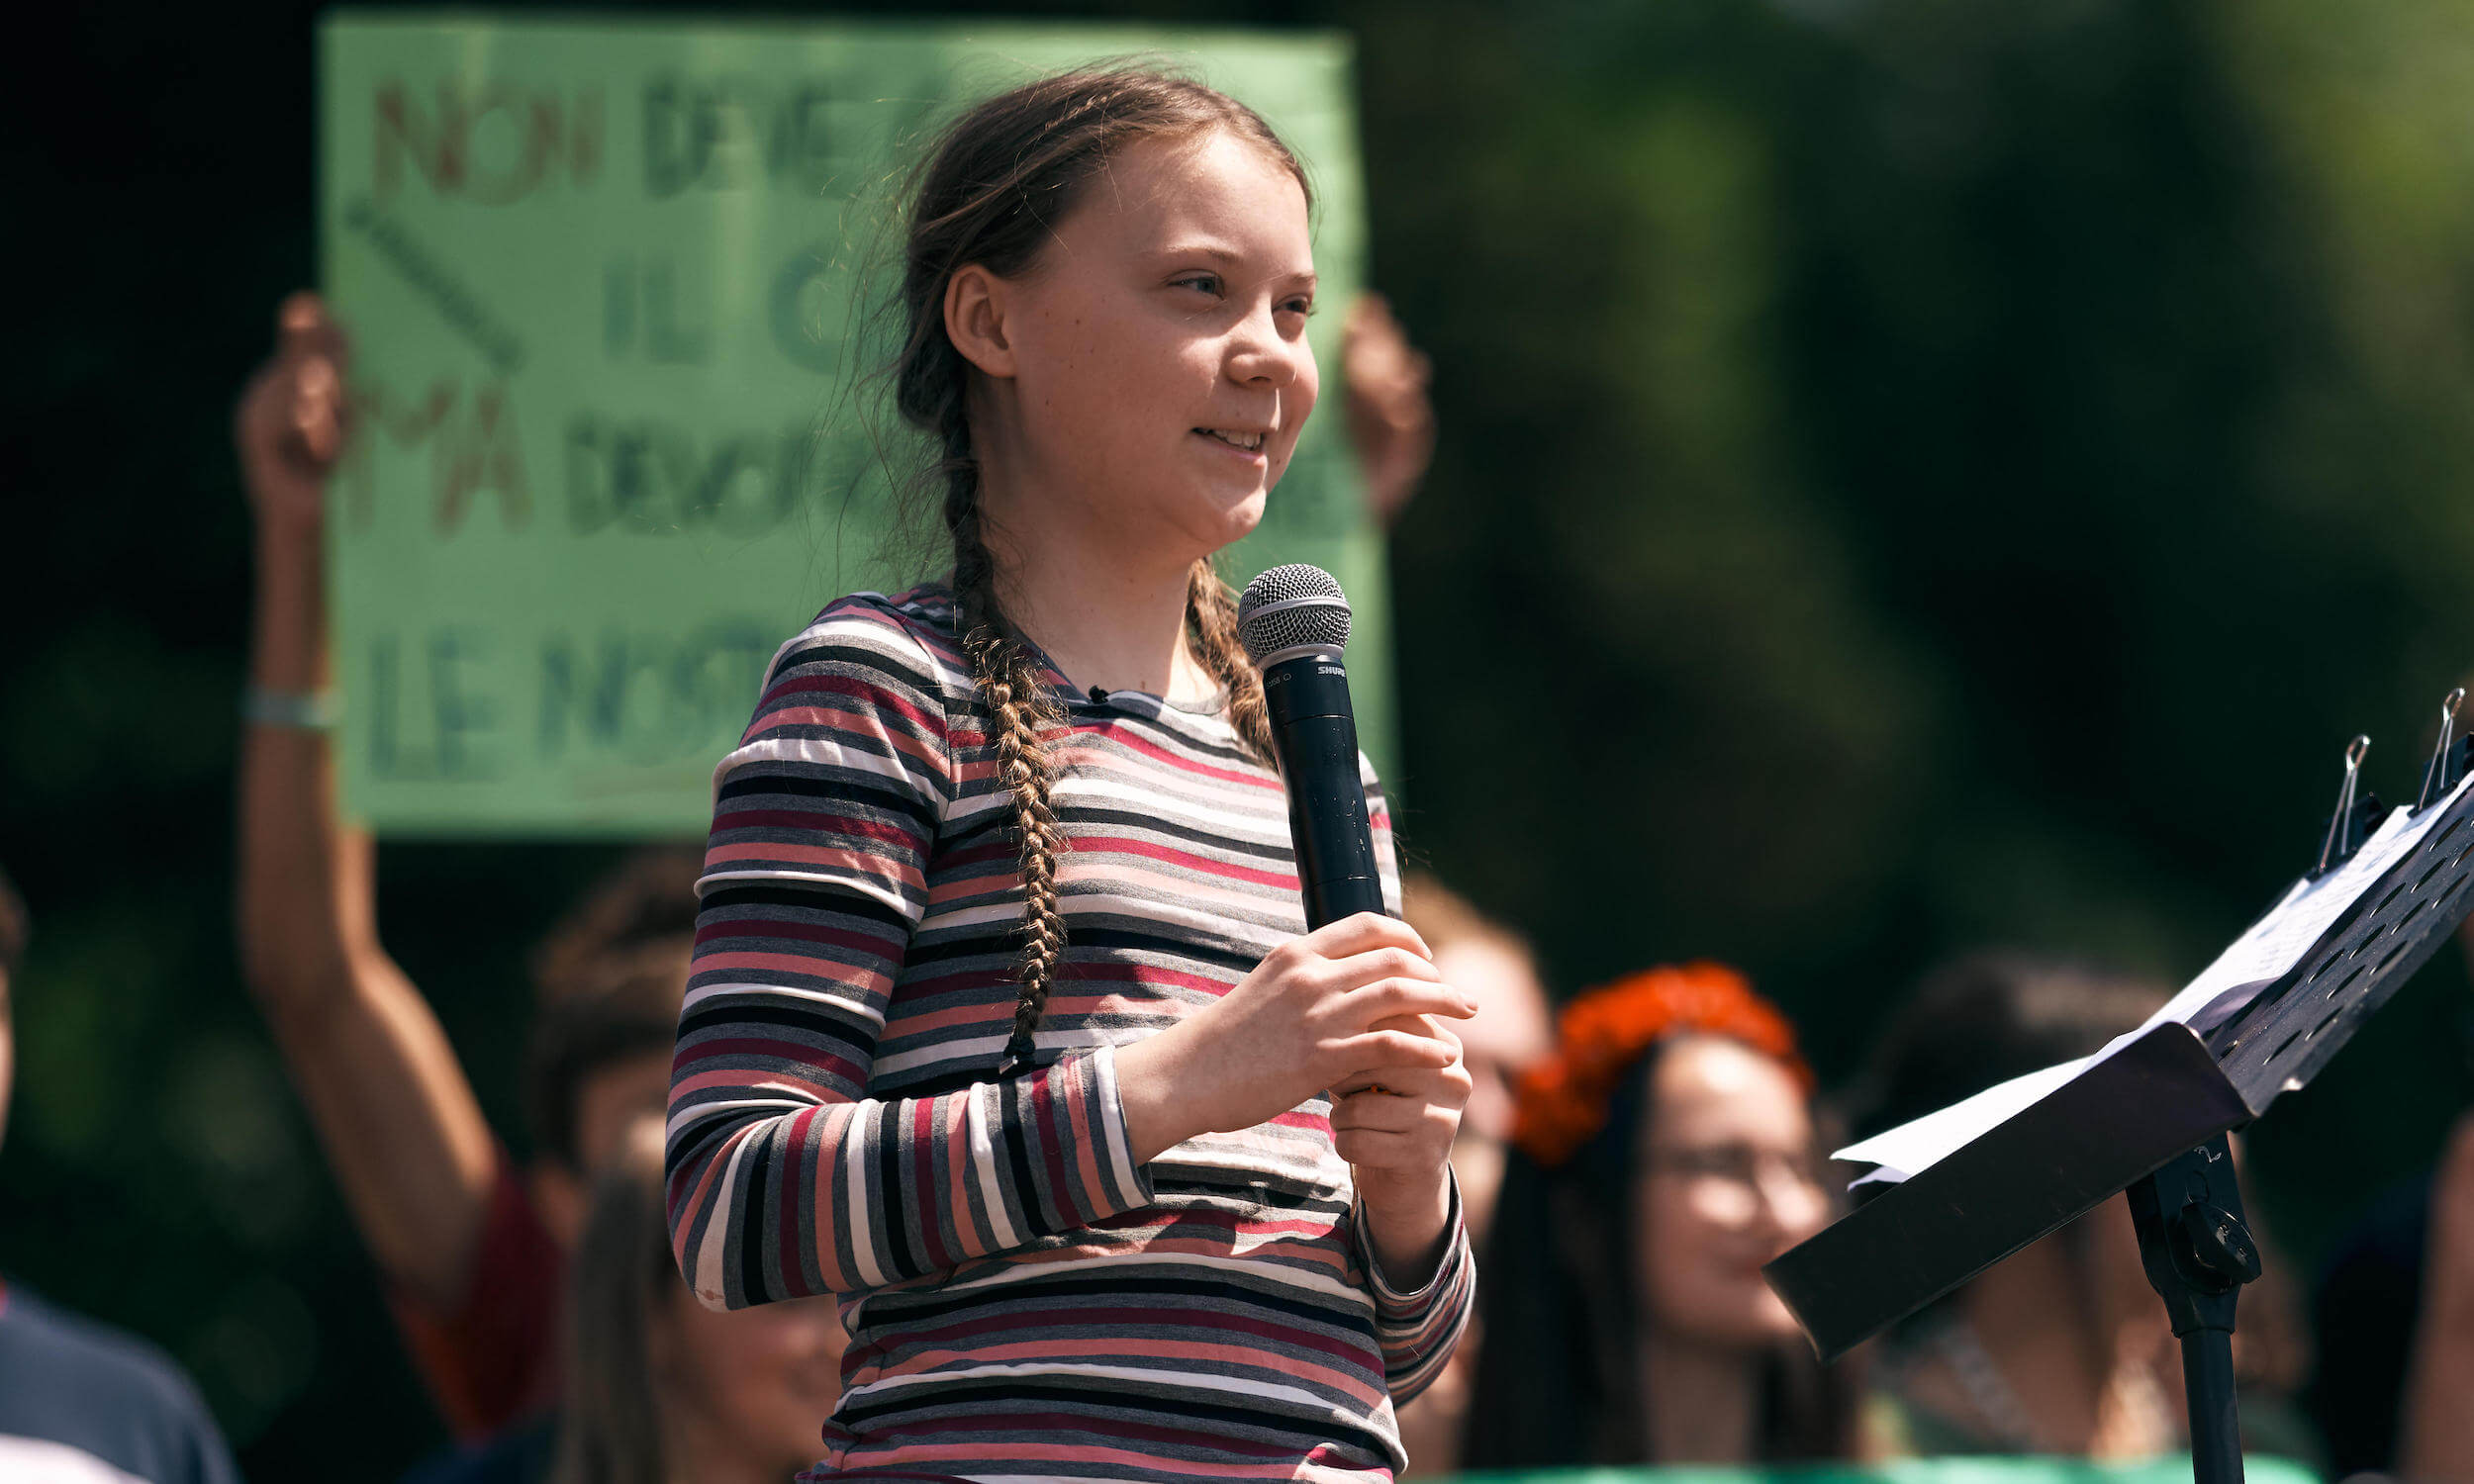 Greta Thunberg speaks in front of crowd